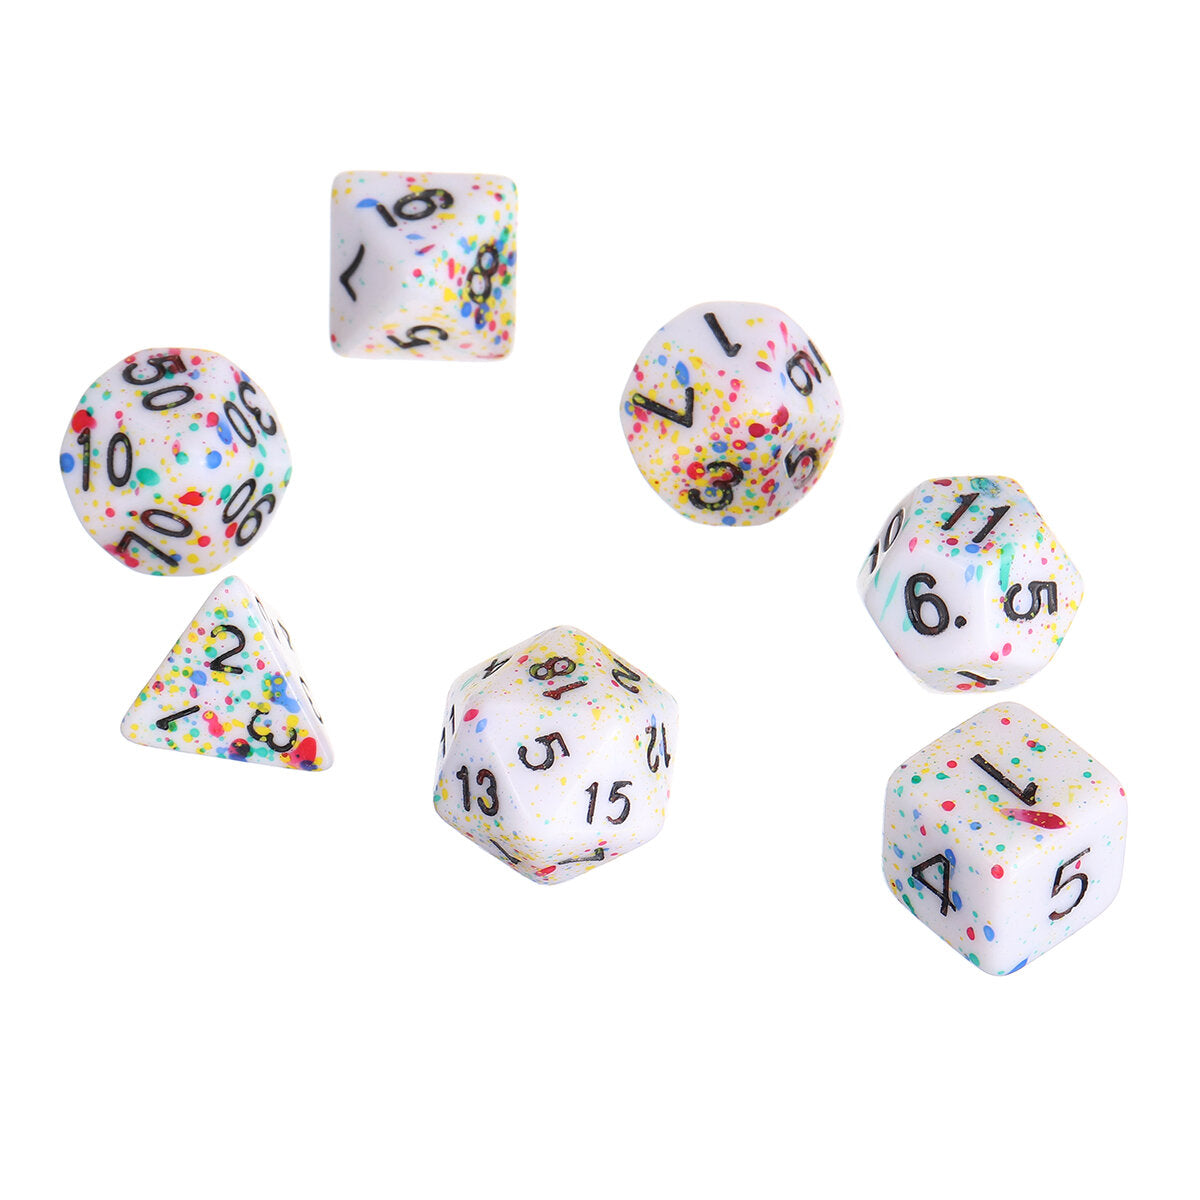 7-delige acryl polyhedral dobbelstenen set colorful bordspel meerzijdige dobbelstenen gadget